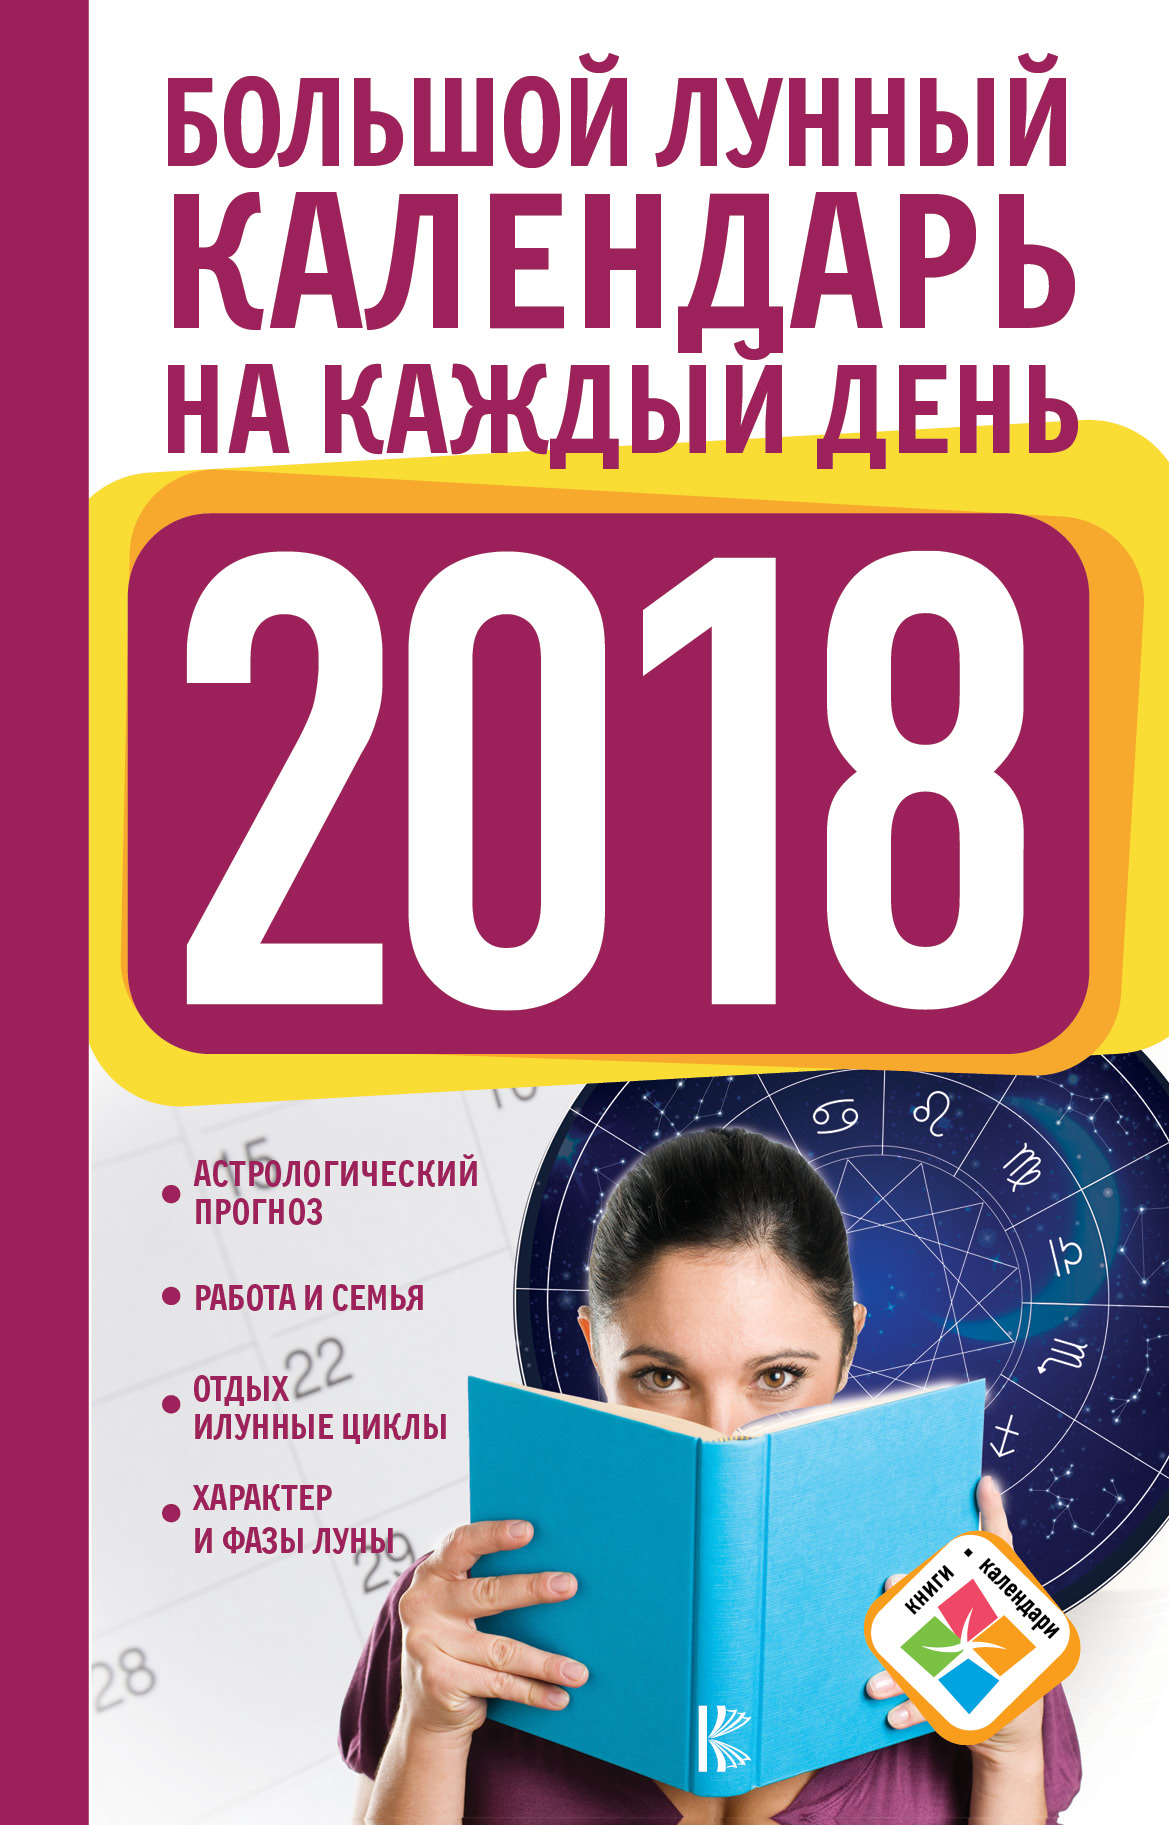 Виноградова Н. Большой лунный календарь на каждый день 2018 года - страница 0